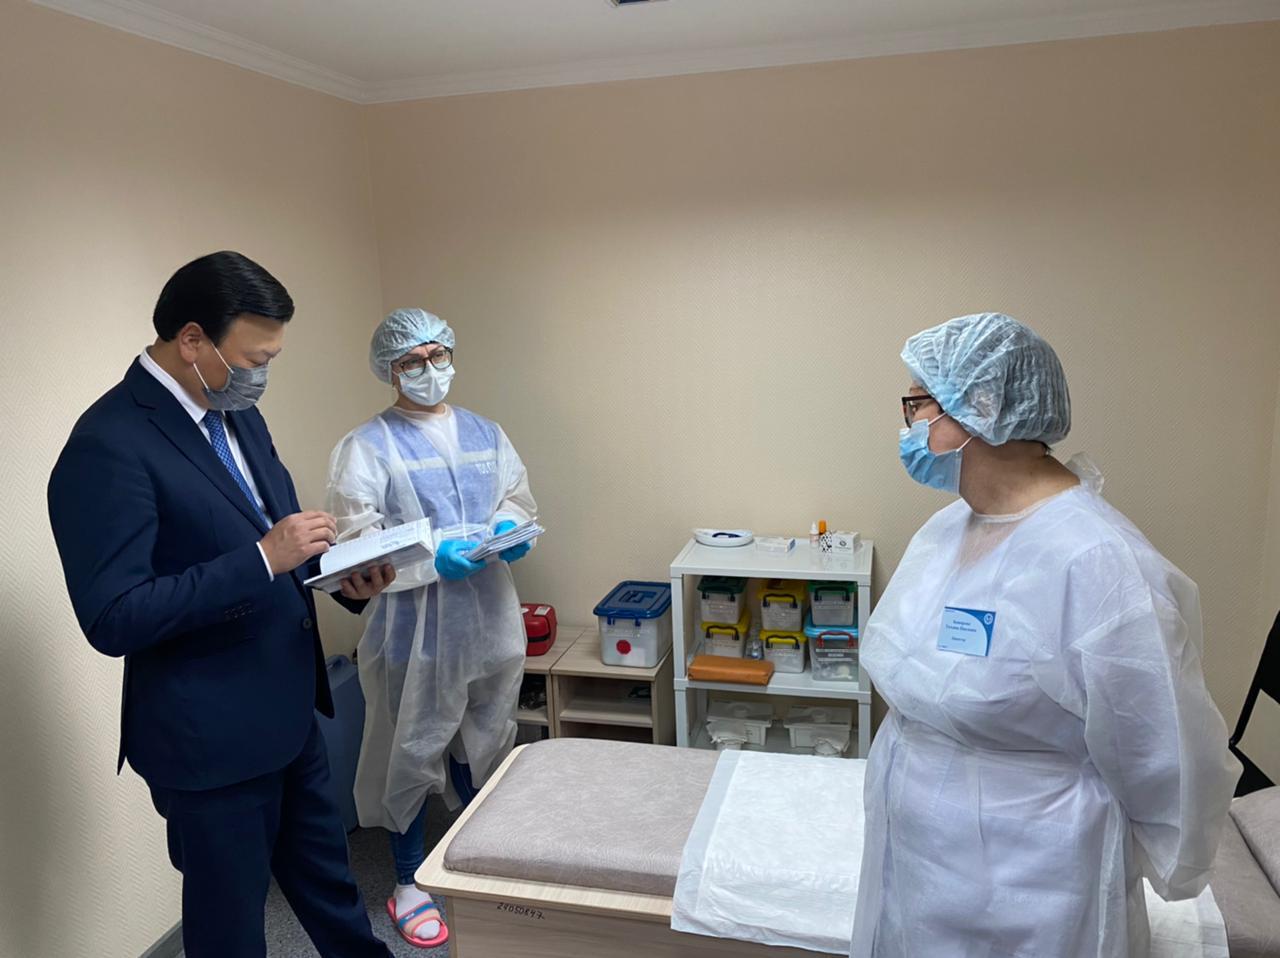 А.Гиният посетила ряд медицинских объектов в Караганде